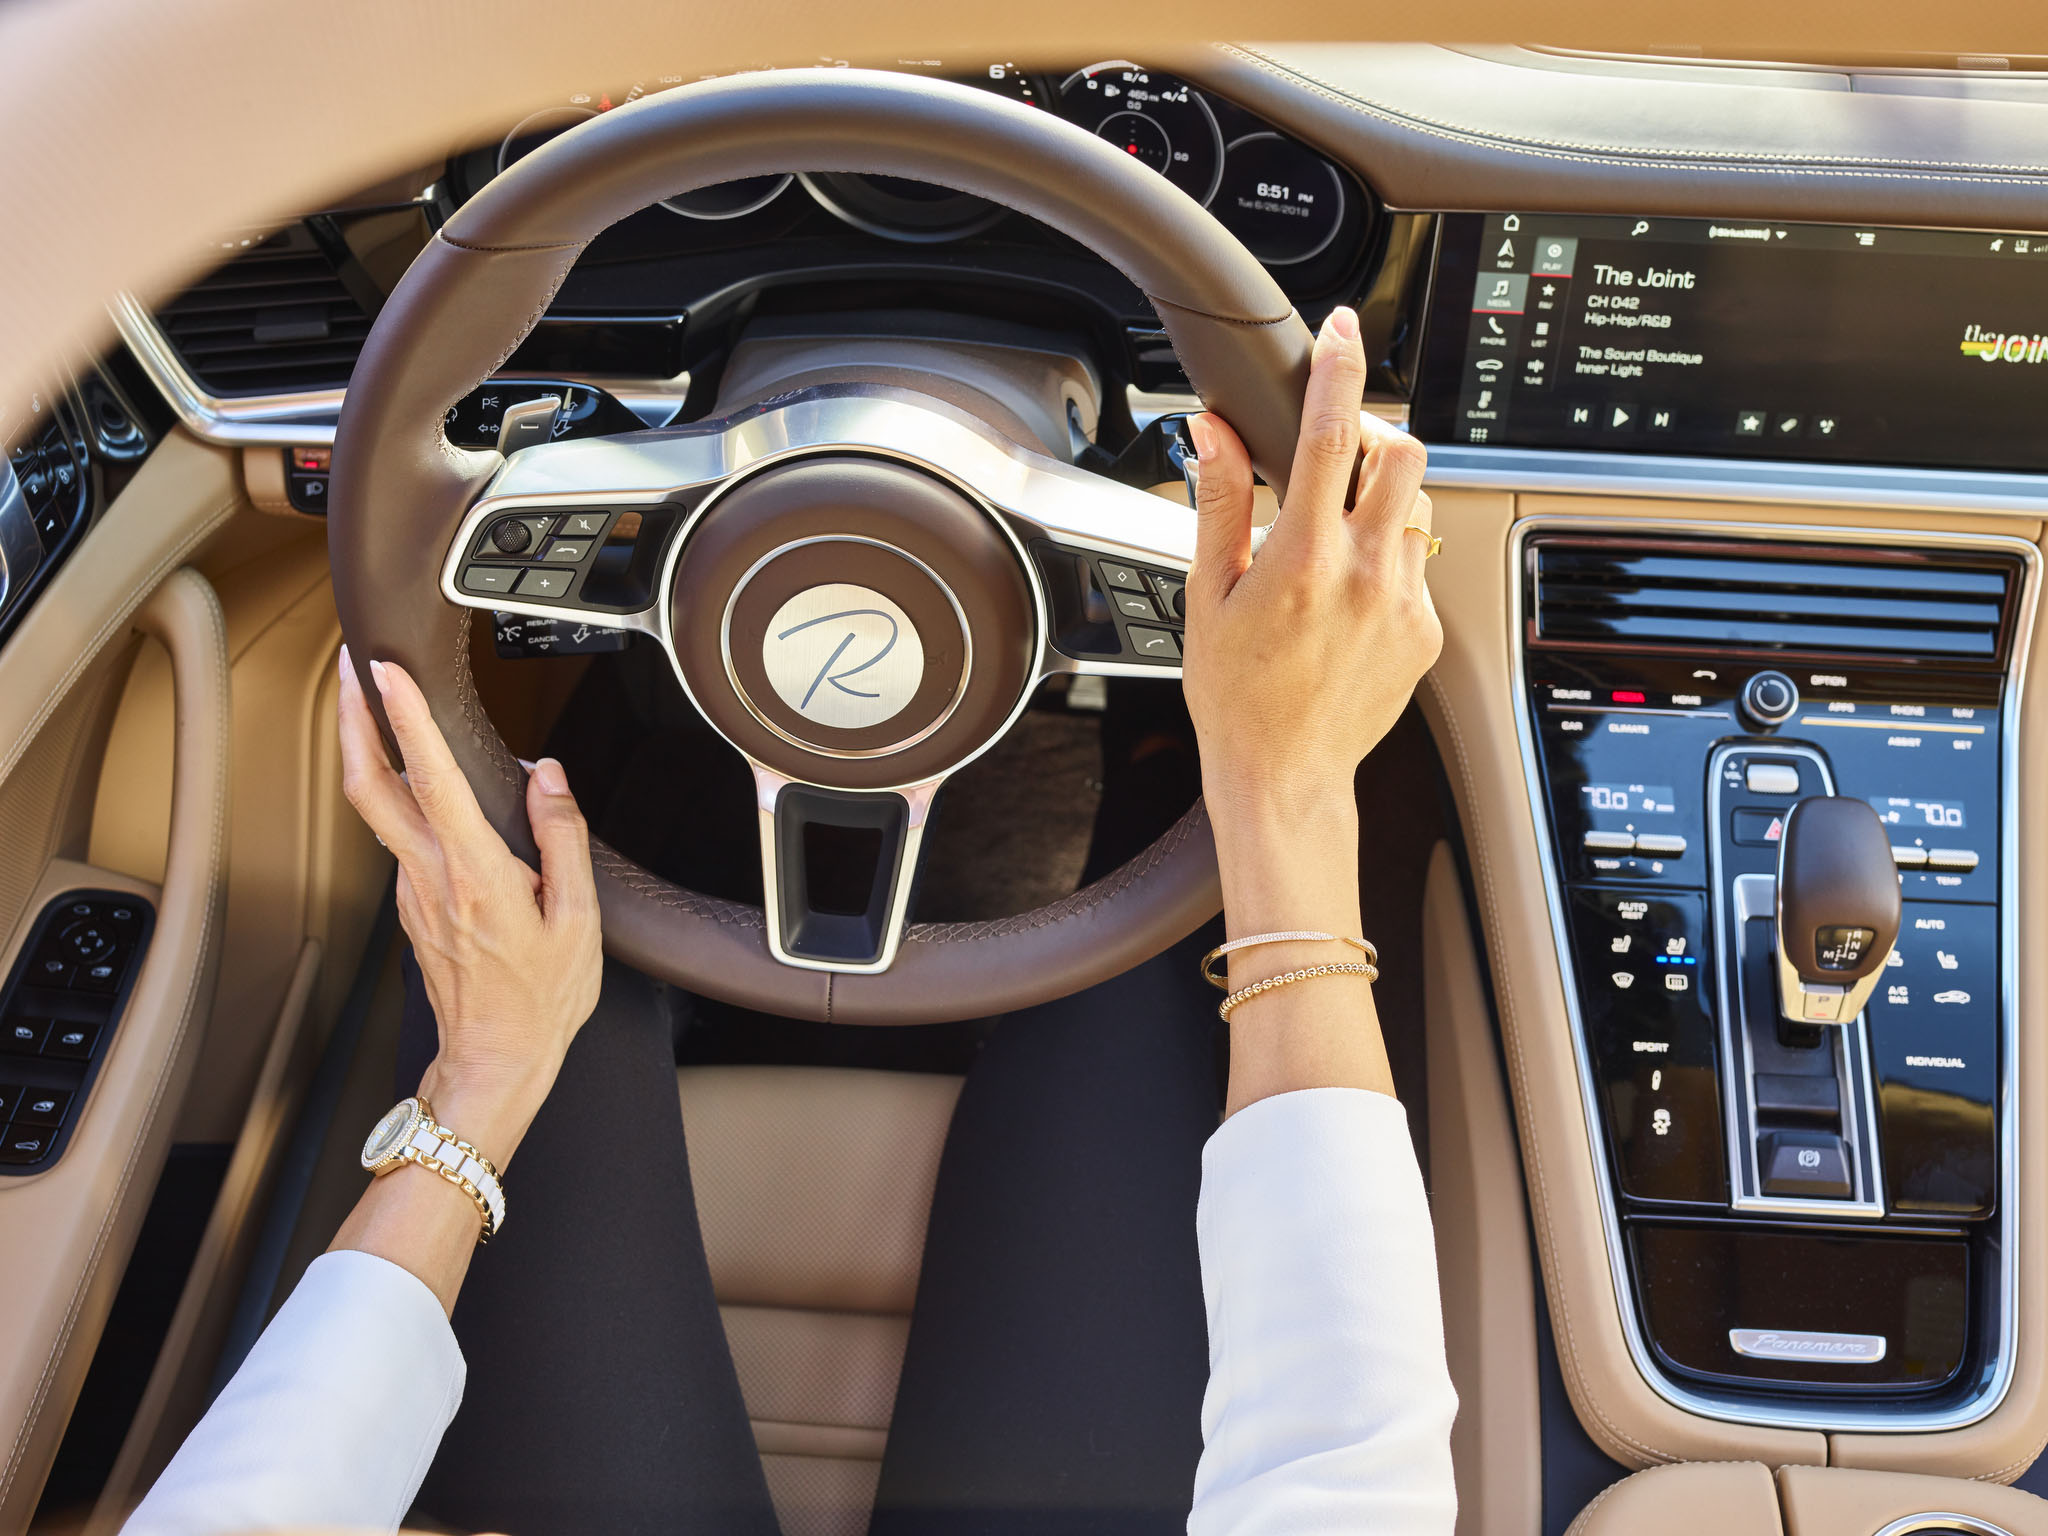 Woman's hands on steering wheel of luxury car